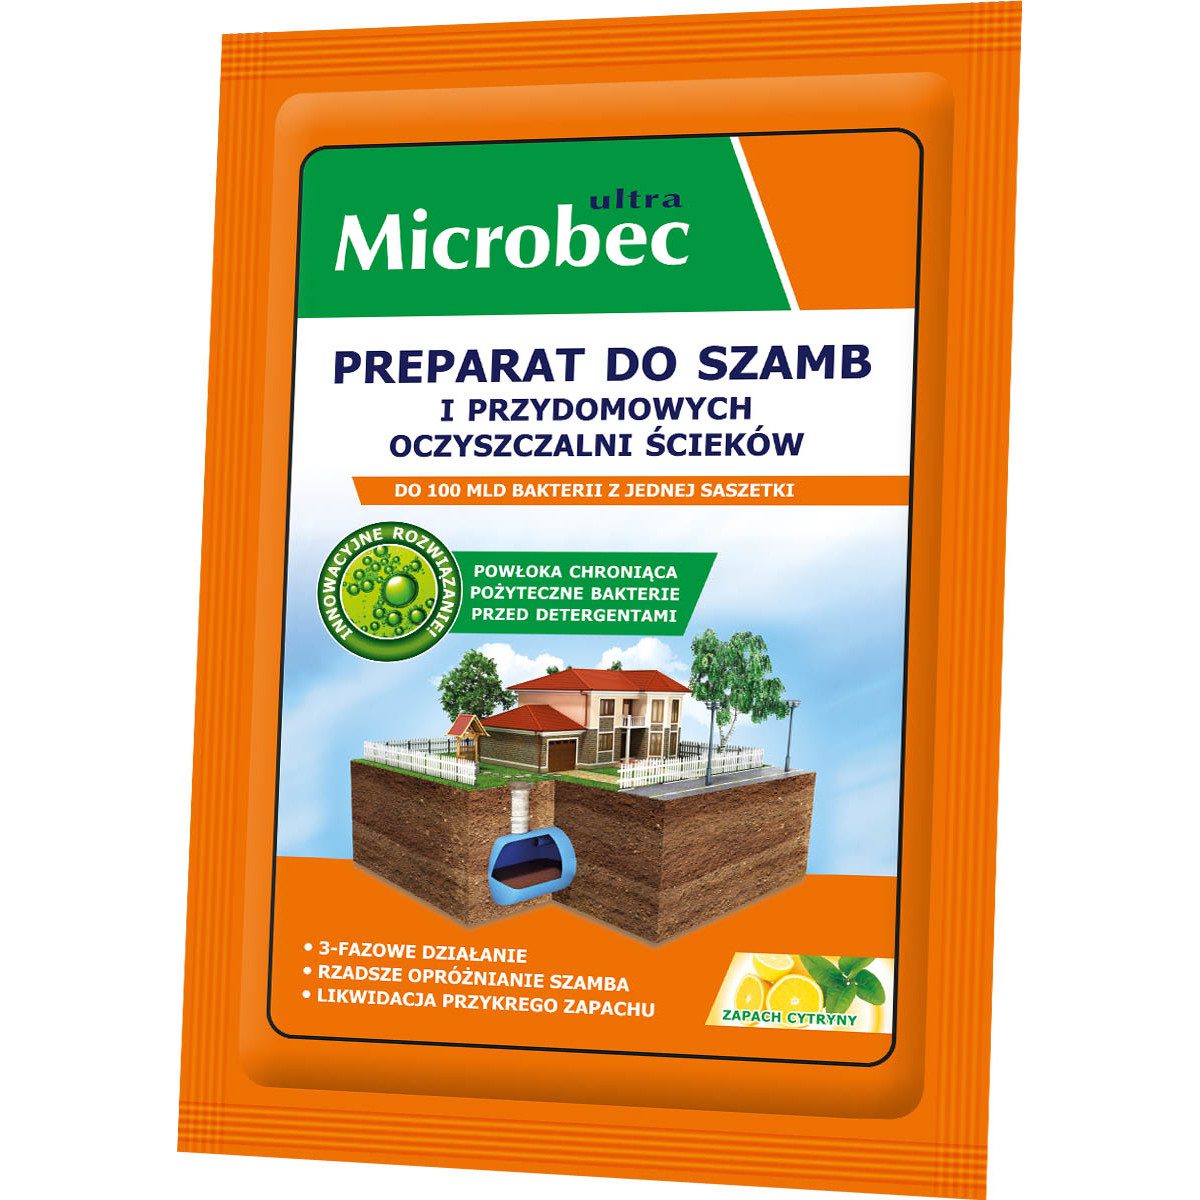 Microbec Ultra zapach cytryny – preparat do szamb 25g